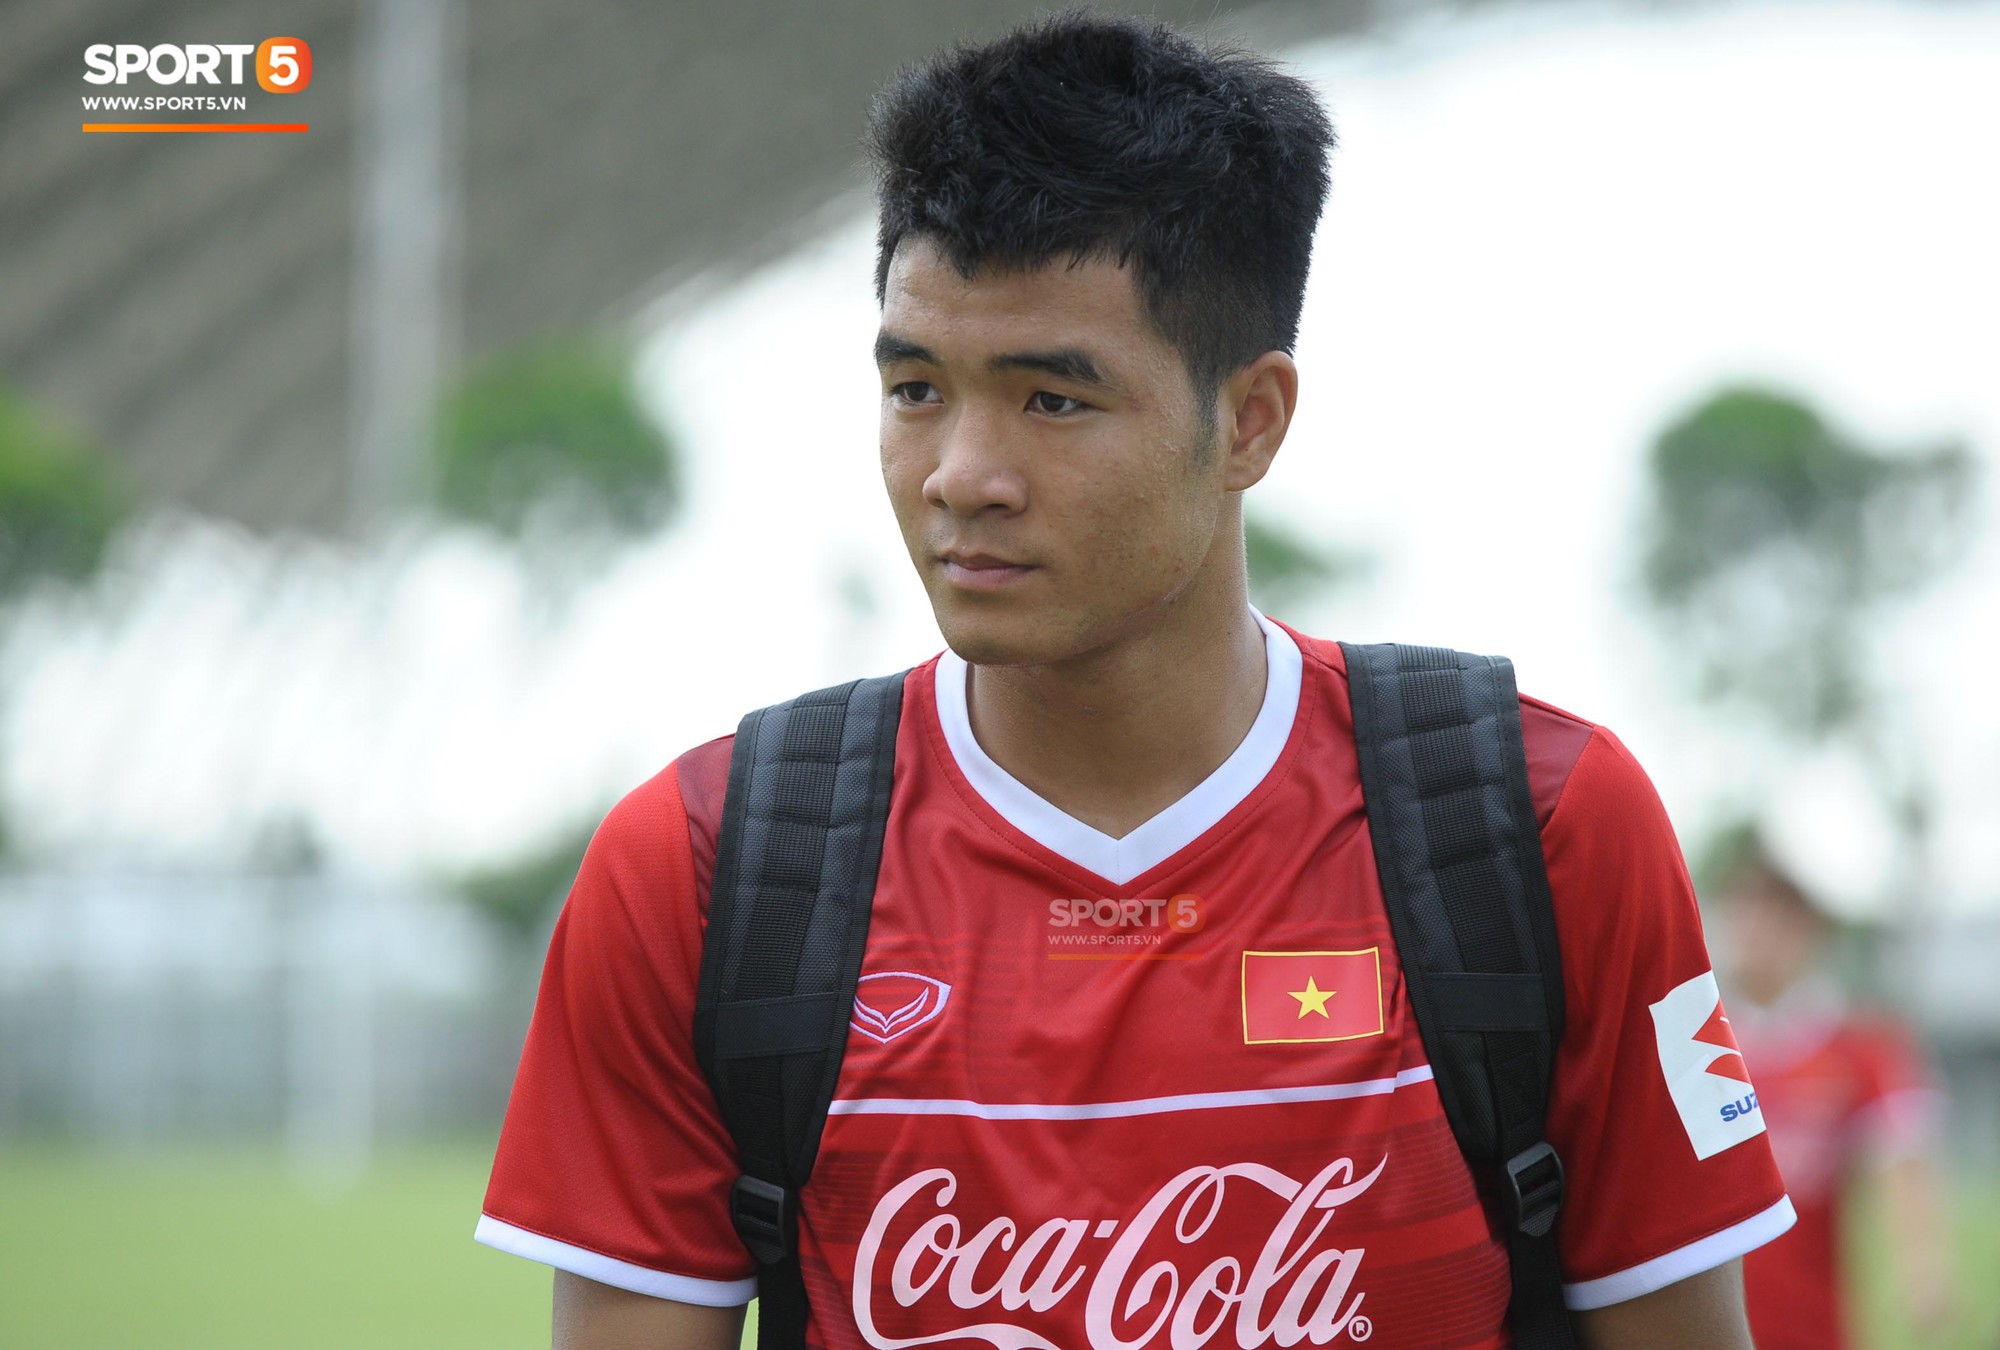 Sau một tuần ép cân, Hà Đức Chinh tự tin với bài kiểm tra thể lực của U23 Việt Nam - Ảnh 2.